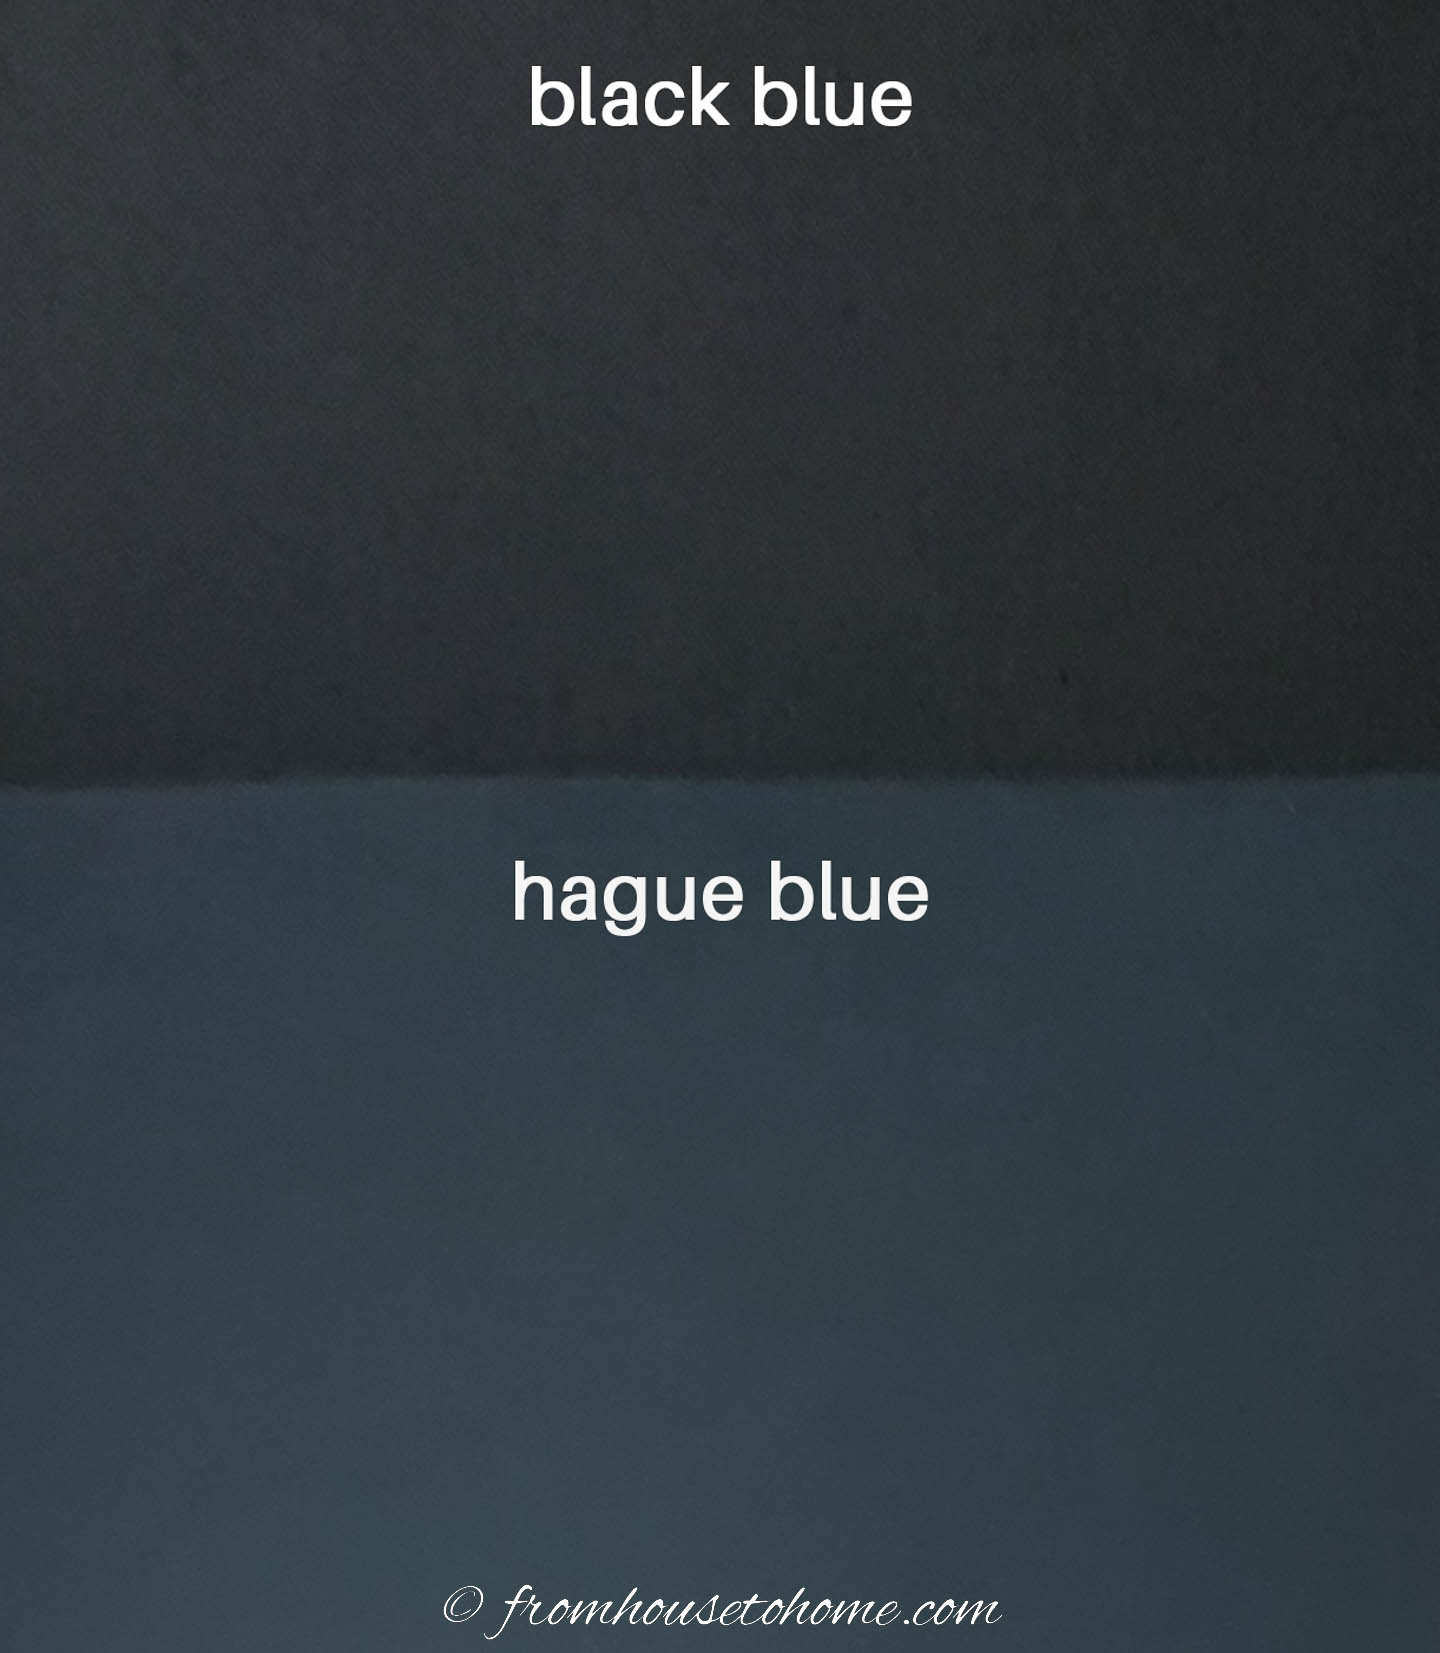 Black Blue (#95) and Hague Blue (#30) paint samples